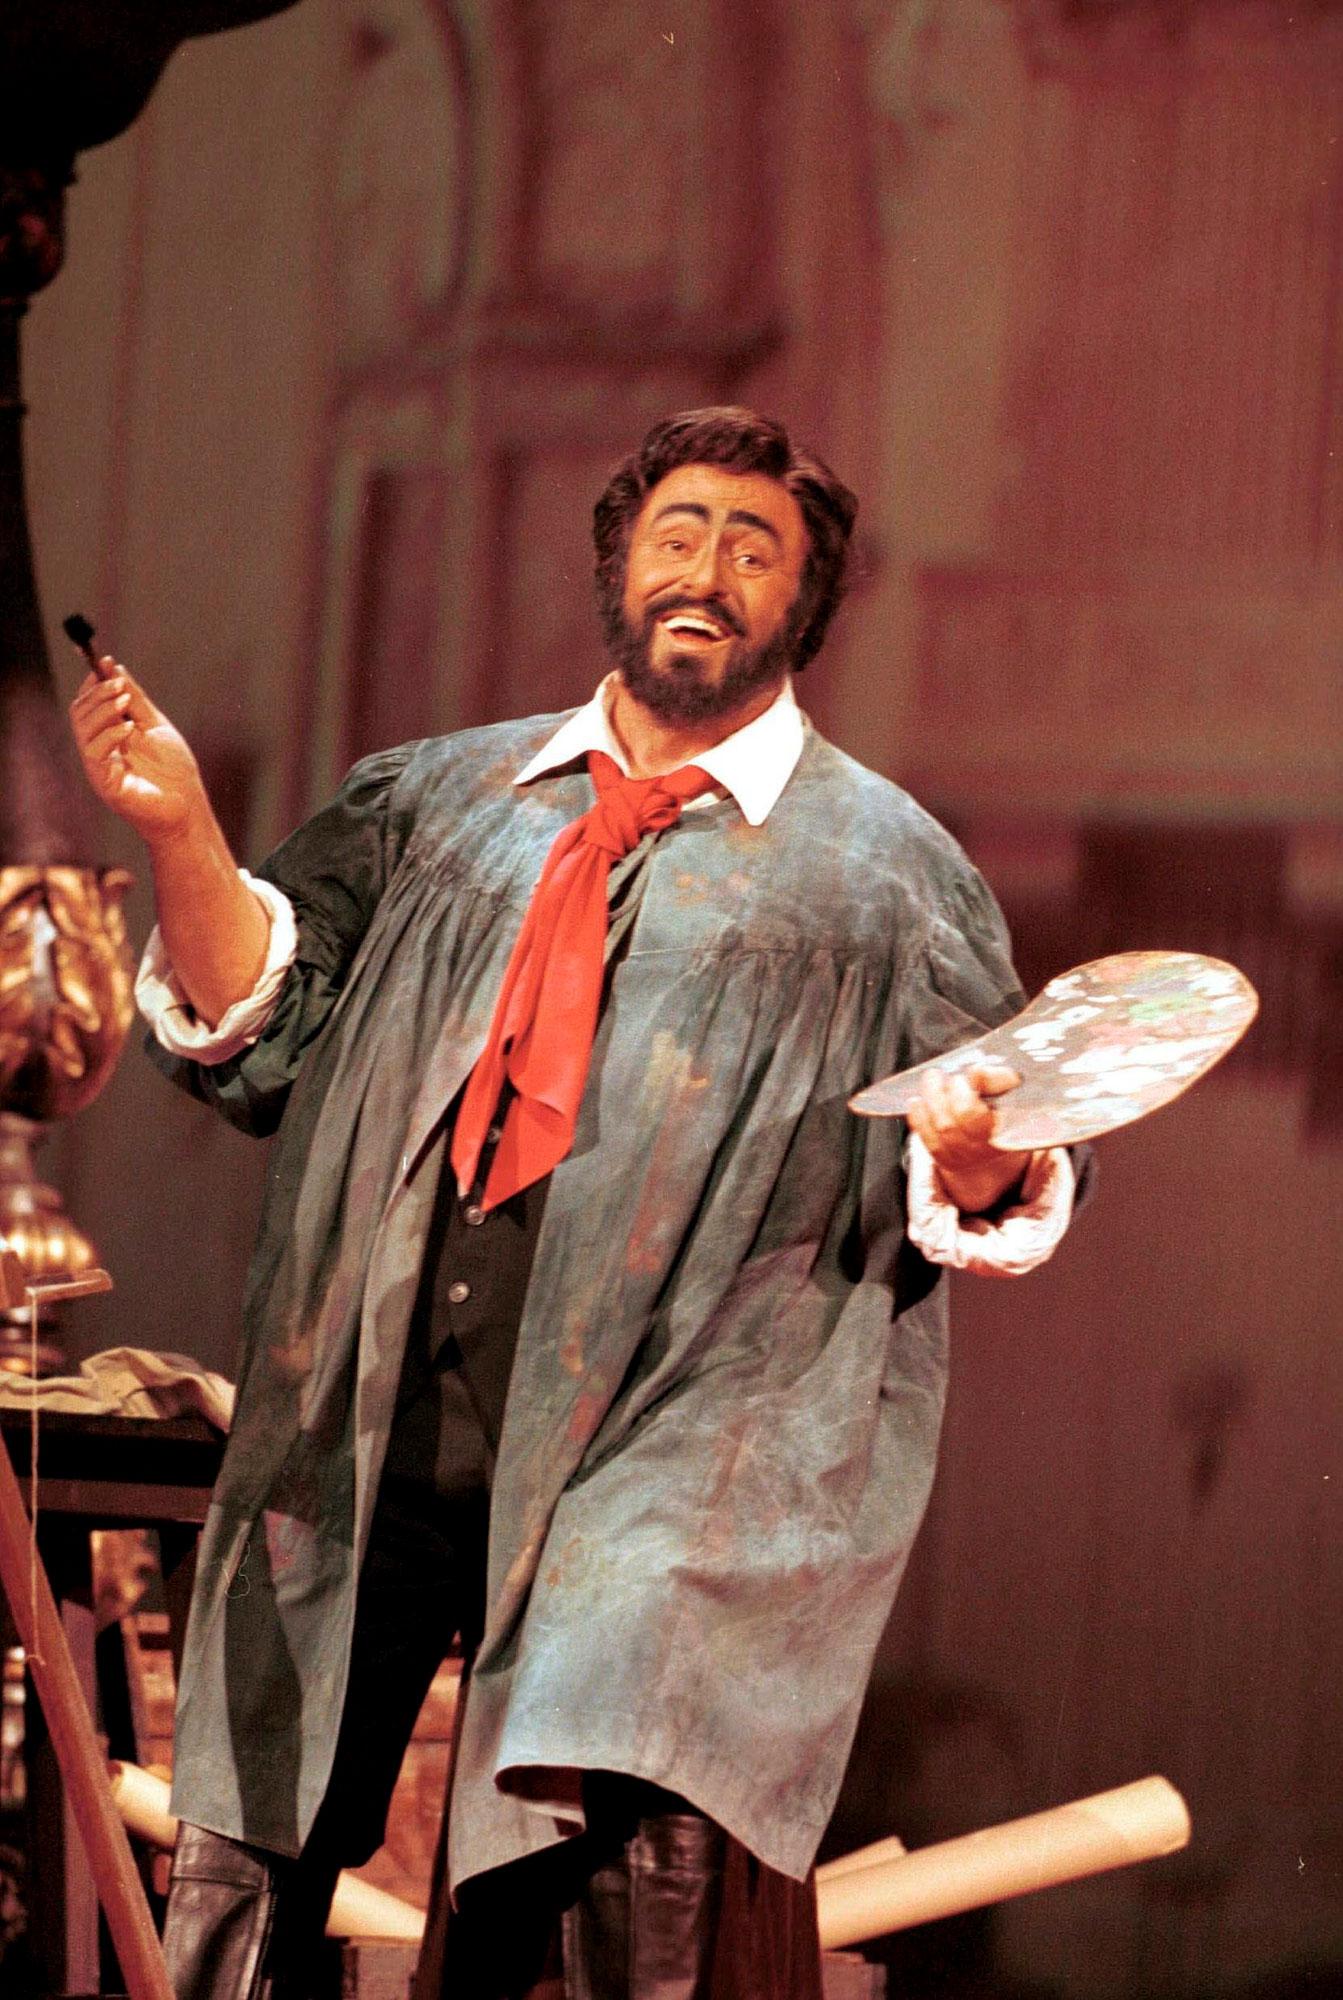 Luciano Pavarotti dans le rôle de Mario Cavaradossi dans "Tosca" de Puccini le 14 janvier 2000 à Rome. [AFP - Leemage]